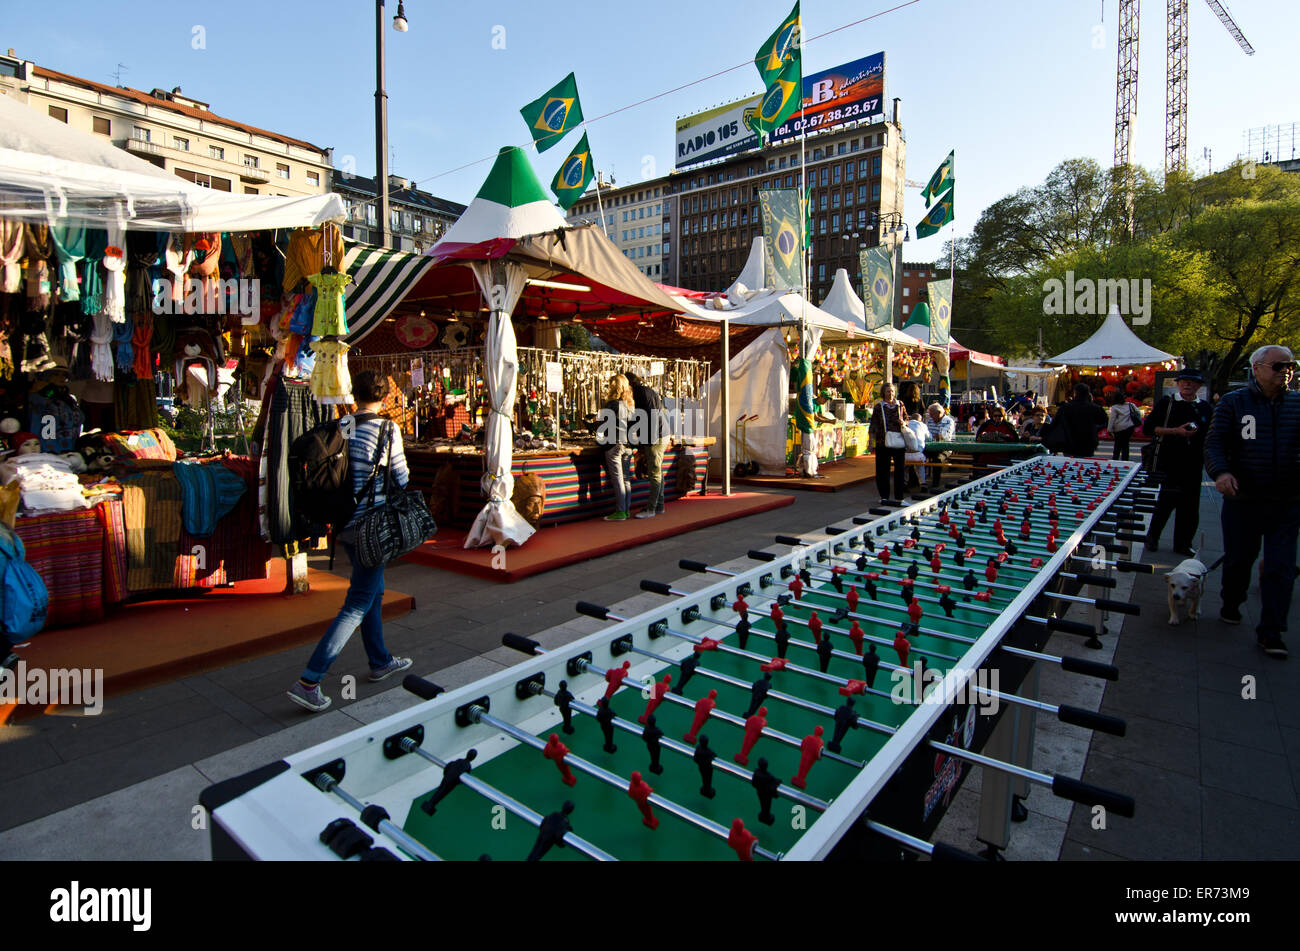 Giant Fussball tavolo da gioco al mercato di fronte a Milano stazione ferroviaria, Italia Foto Stock